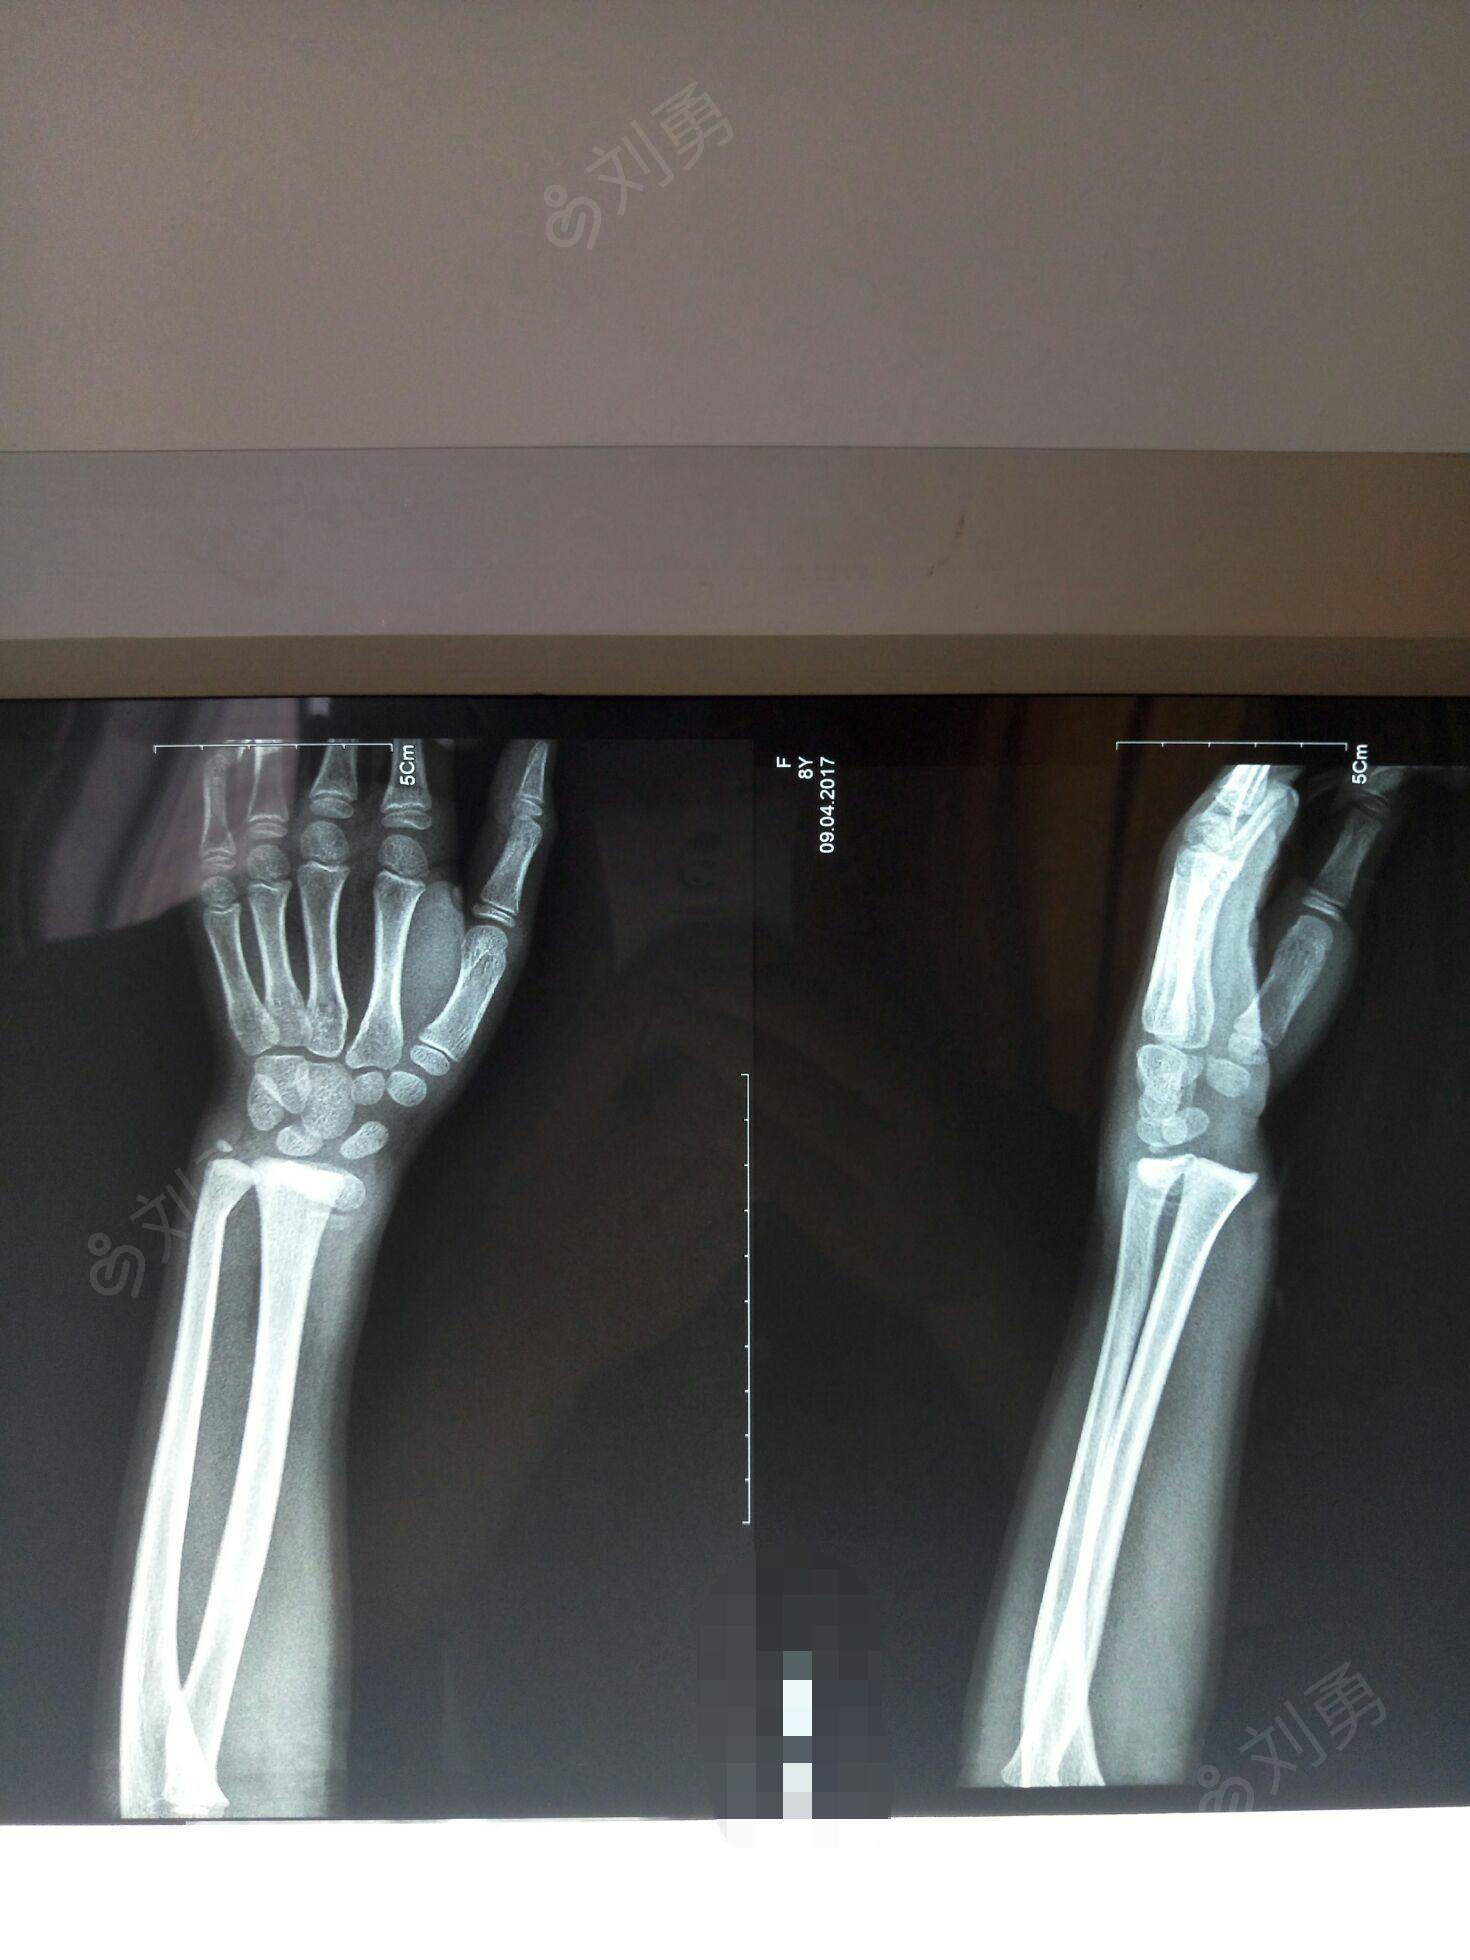 吐等不适,由家人送本院就诊,查x线片提示左尺桡骨远端骨折并骨骺损伤